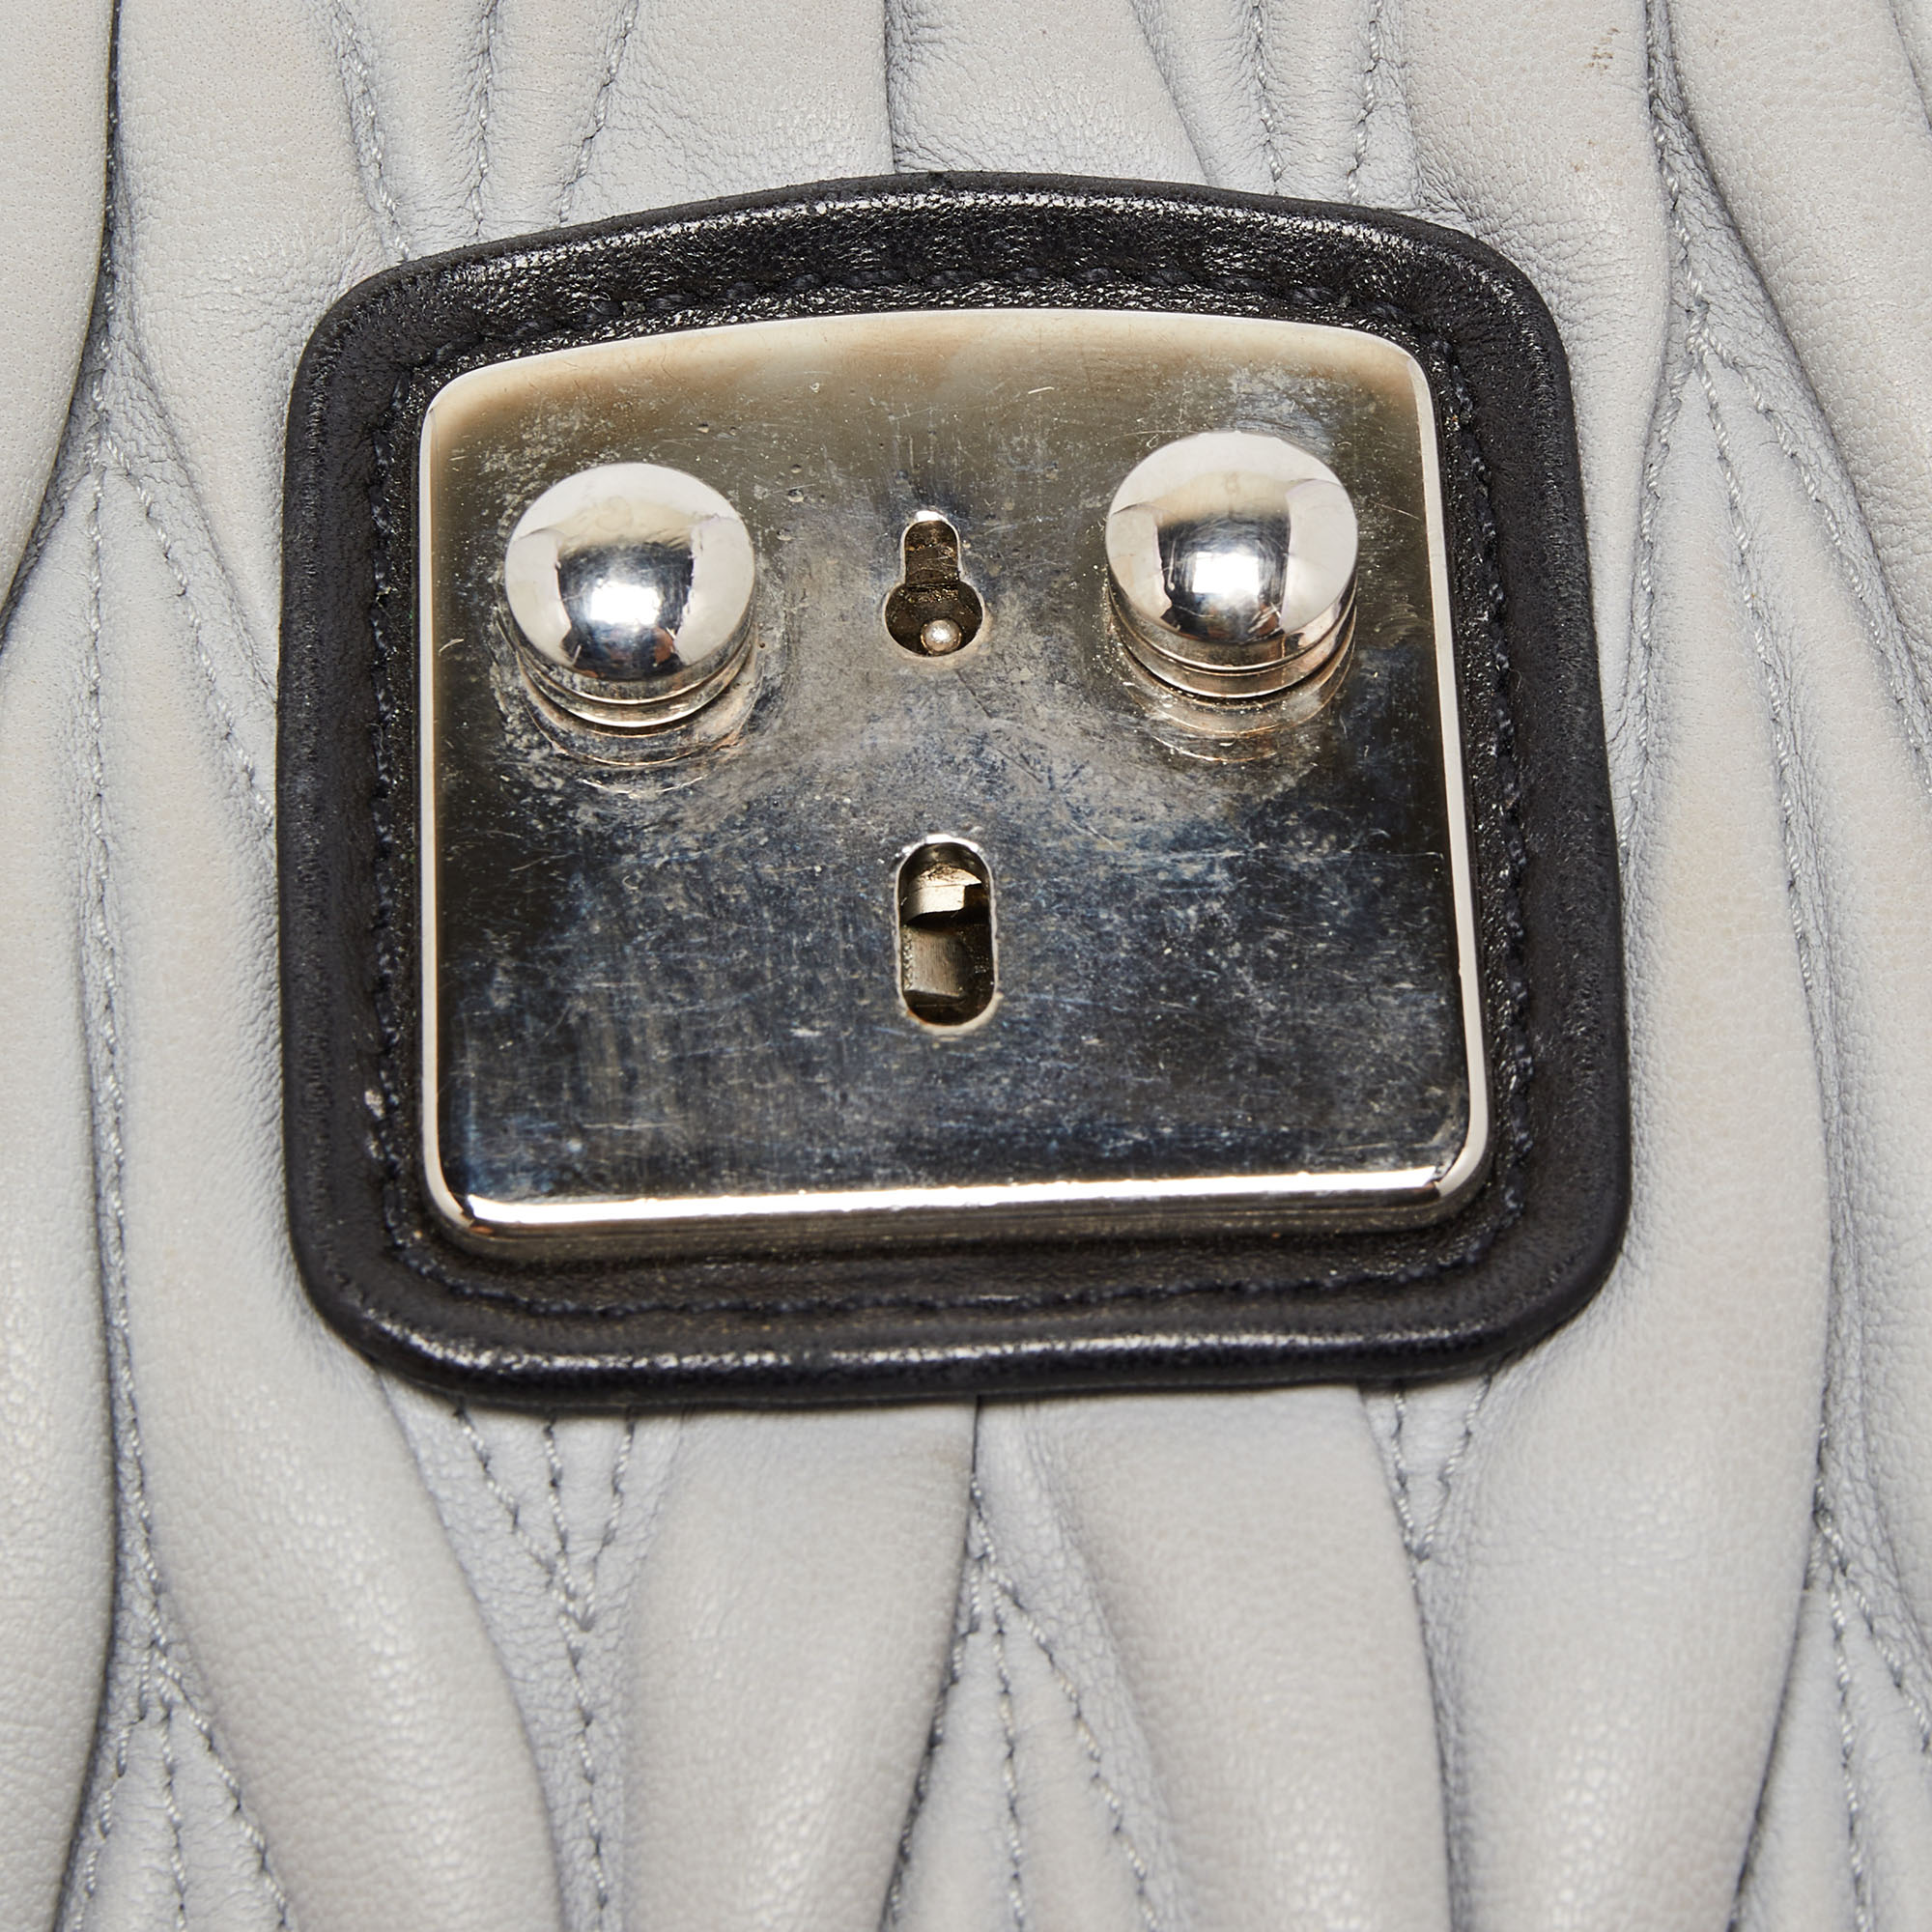 Miu Miu Black/Grey Matelassé Leather Confidential Top Handle Bag